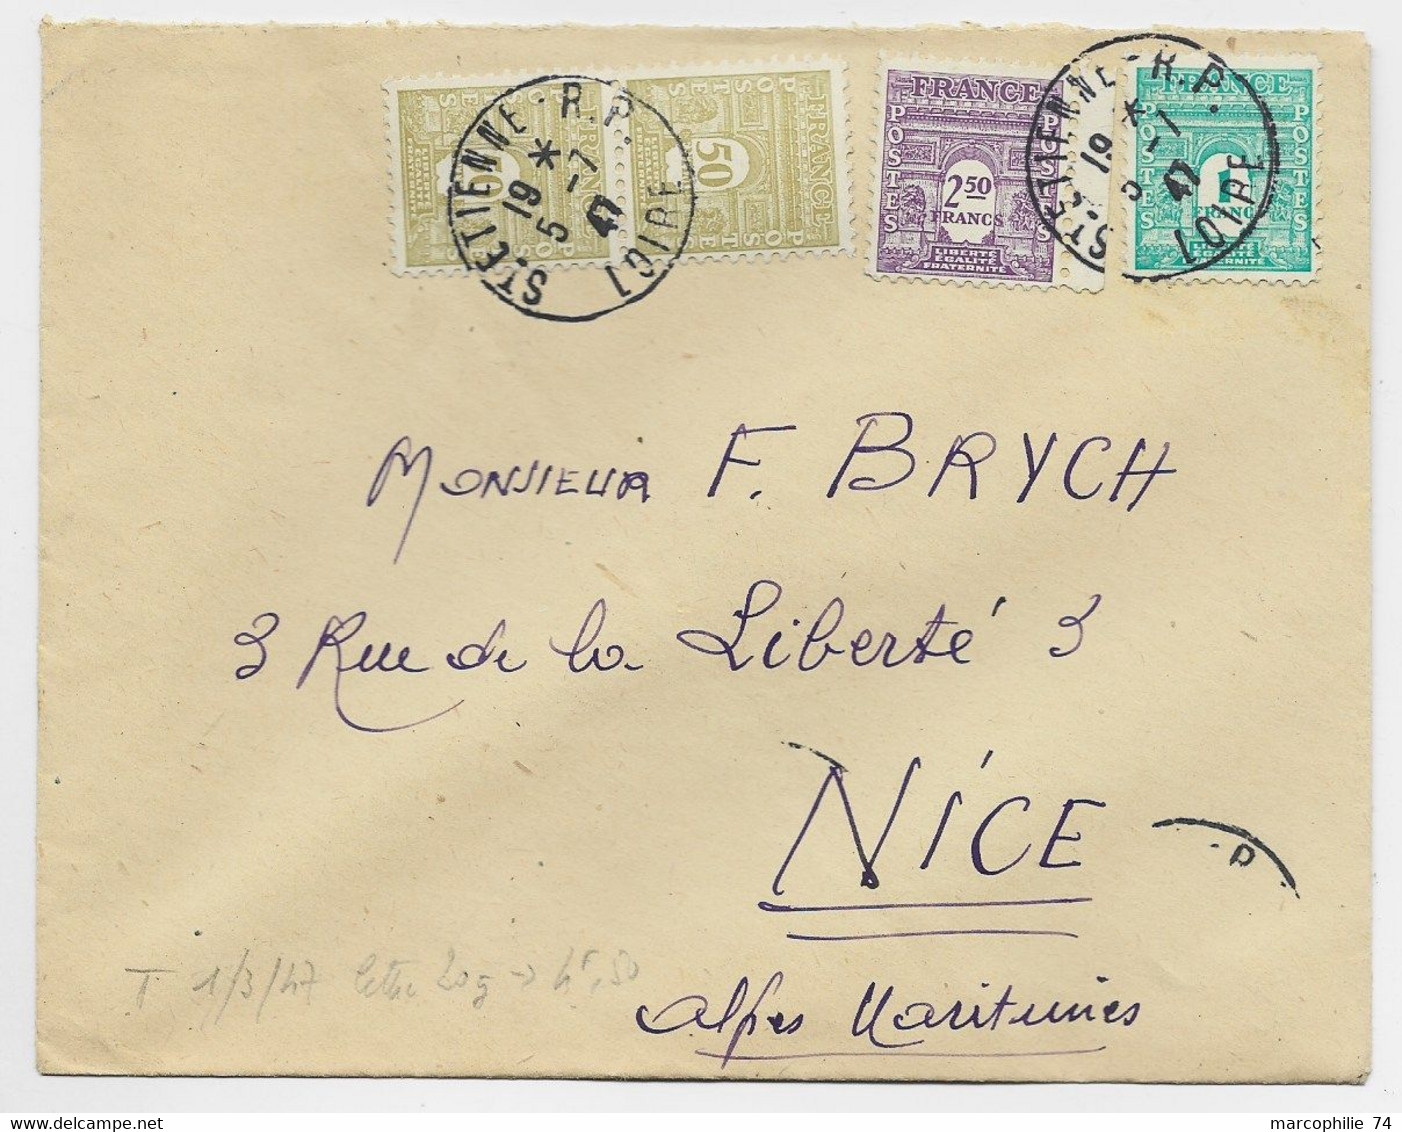 FRANCE ARC TRIOMPHE 2FR50+1FR+50C PAIRE LETTRE COVER ST ETIENNE RP 5.7.1947 AU TARIF - 1944-45 Arc De Triomphe